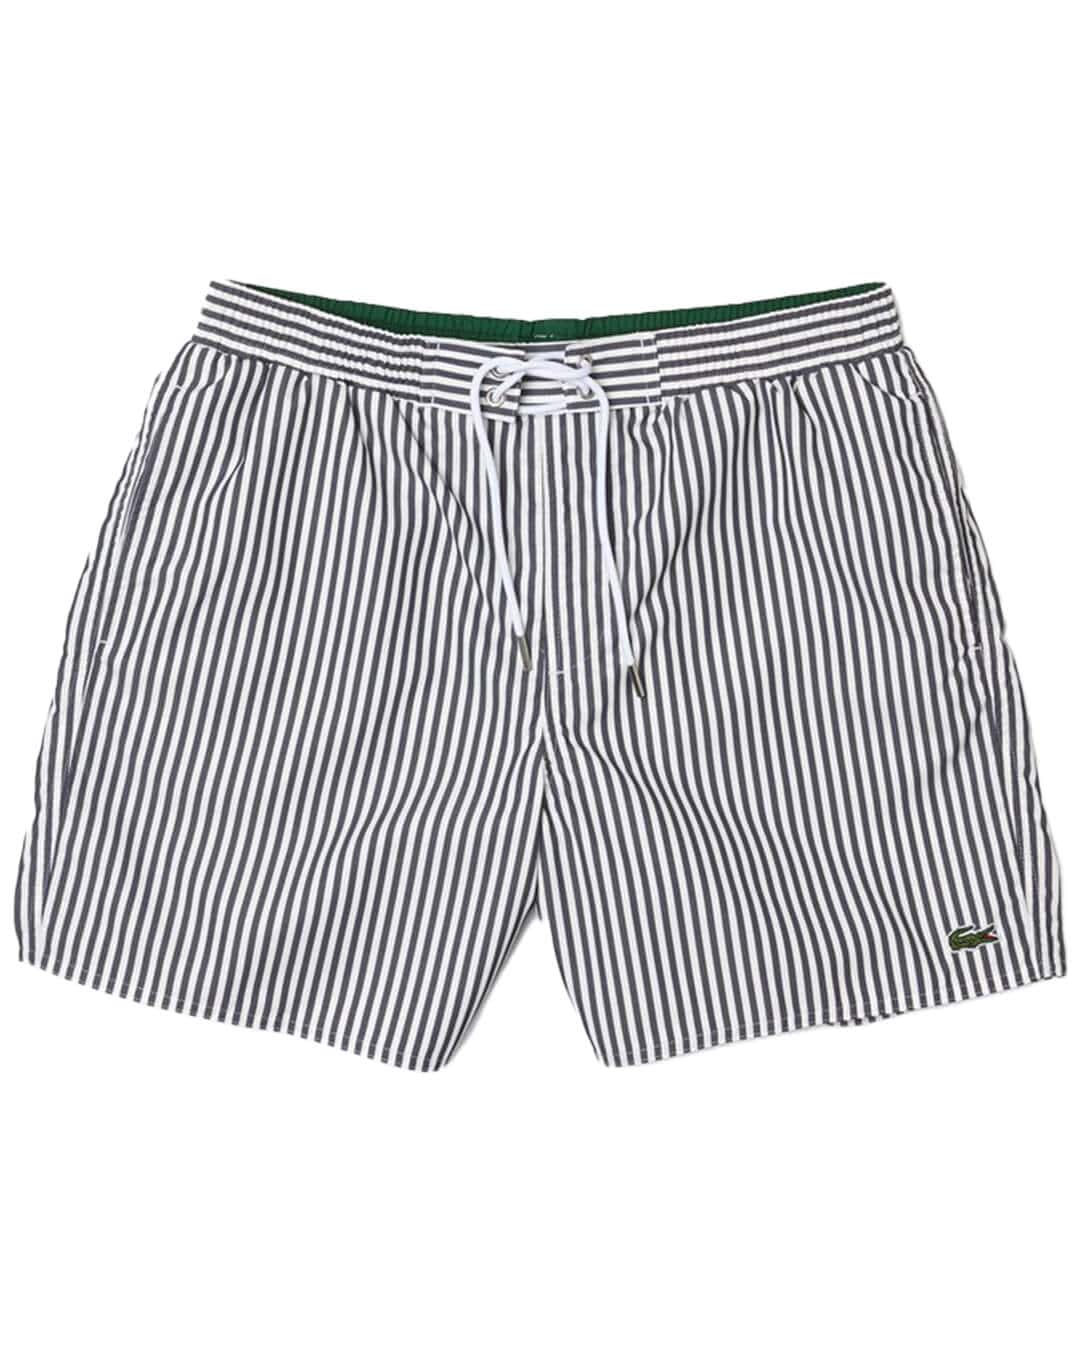 Lacoste Swimwear Lacoste Striped Navy Swim Shorts